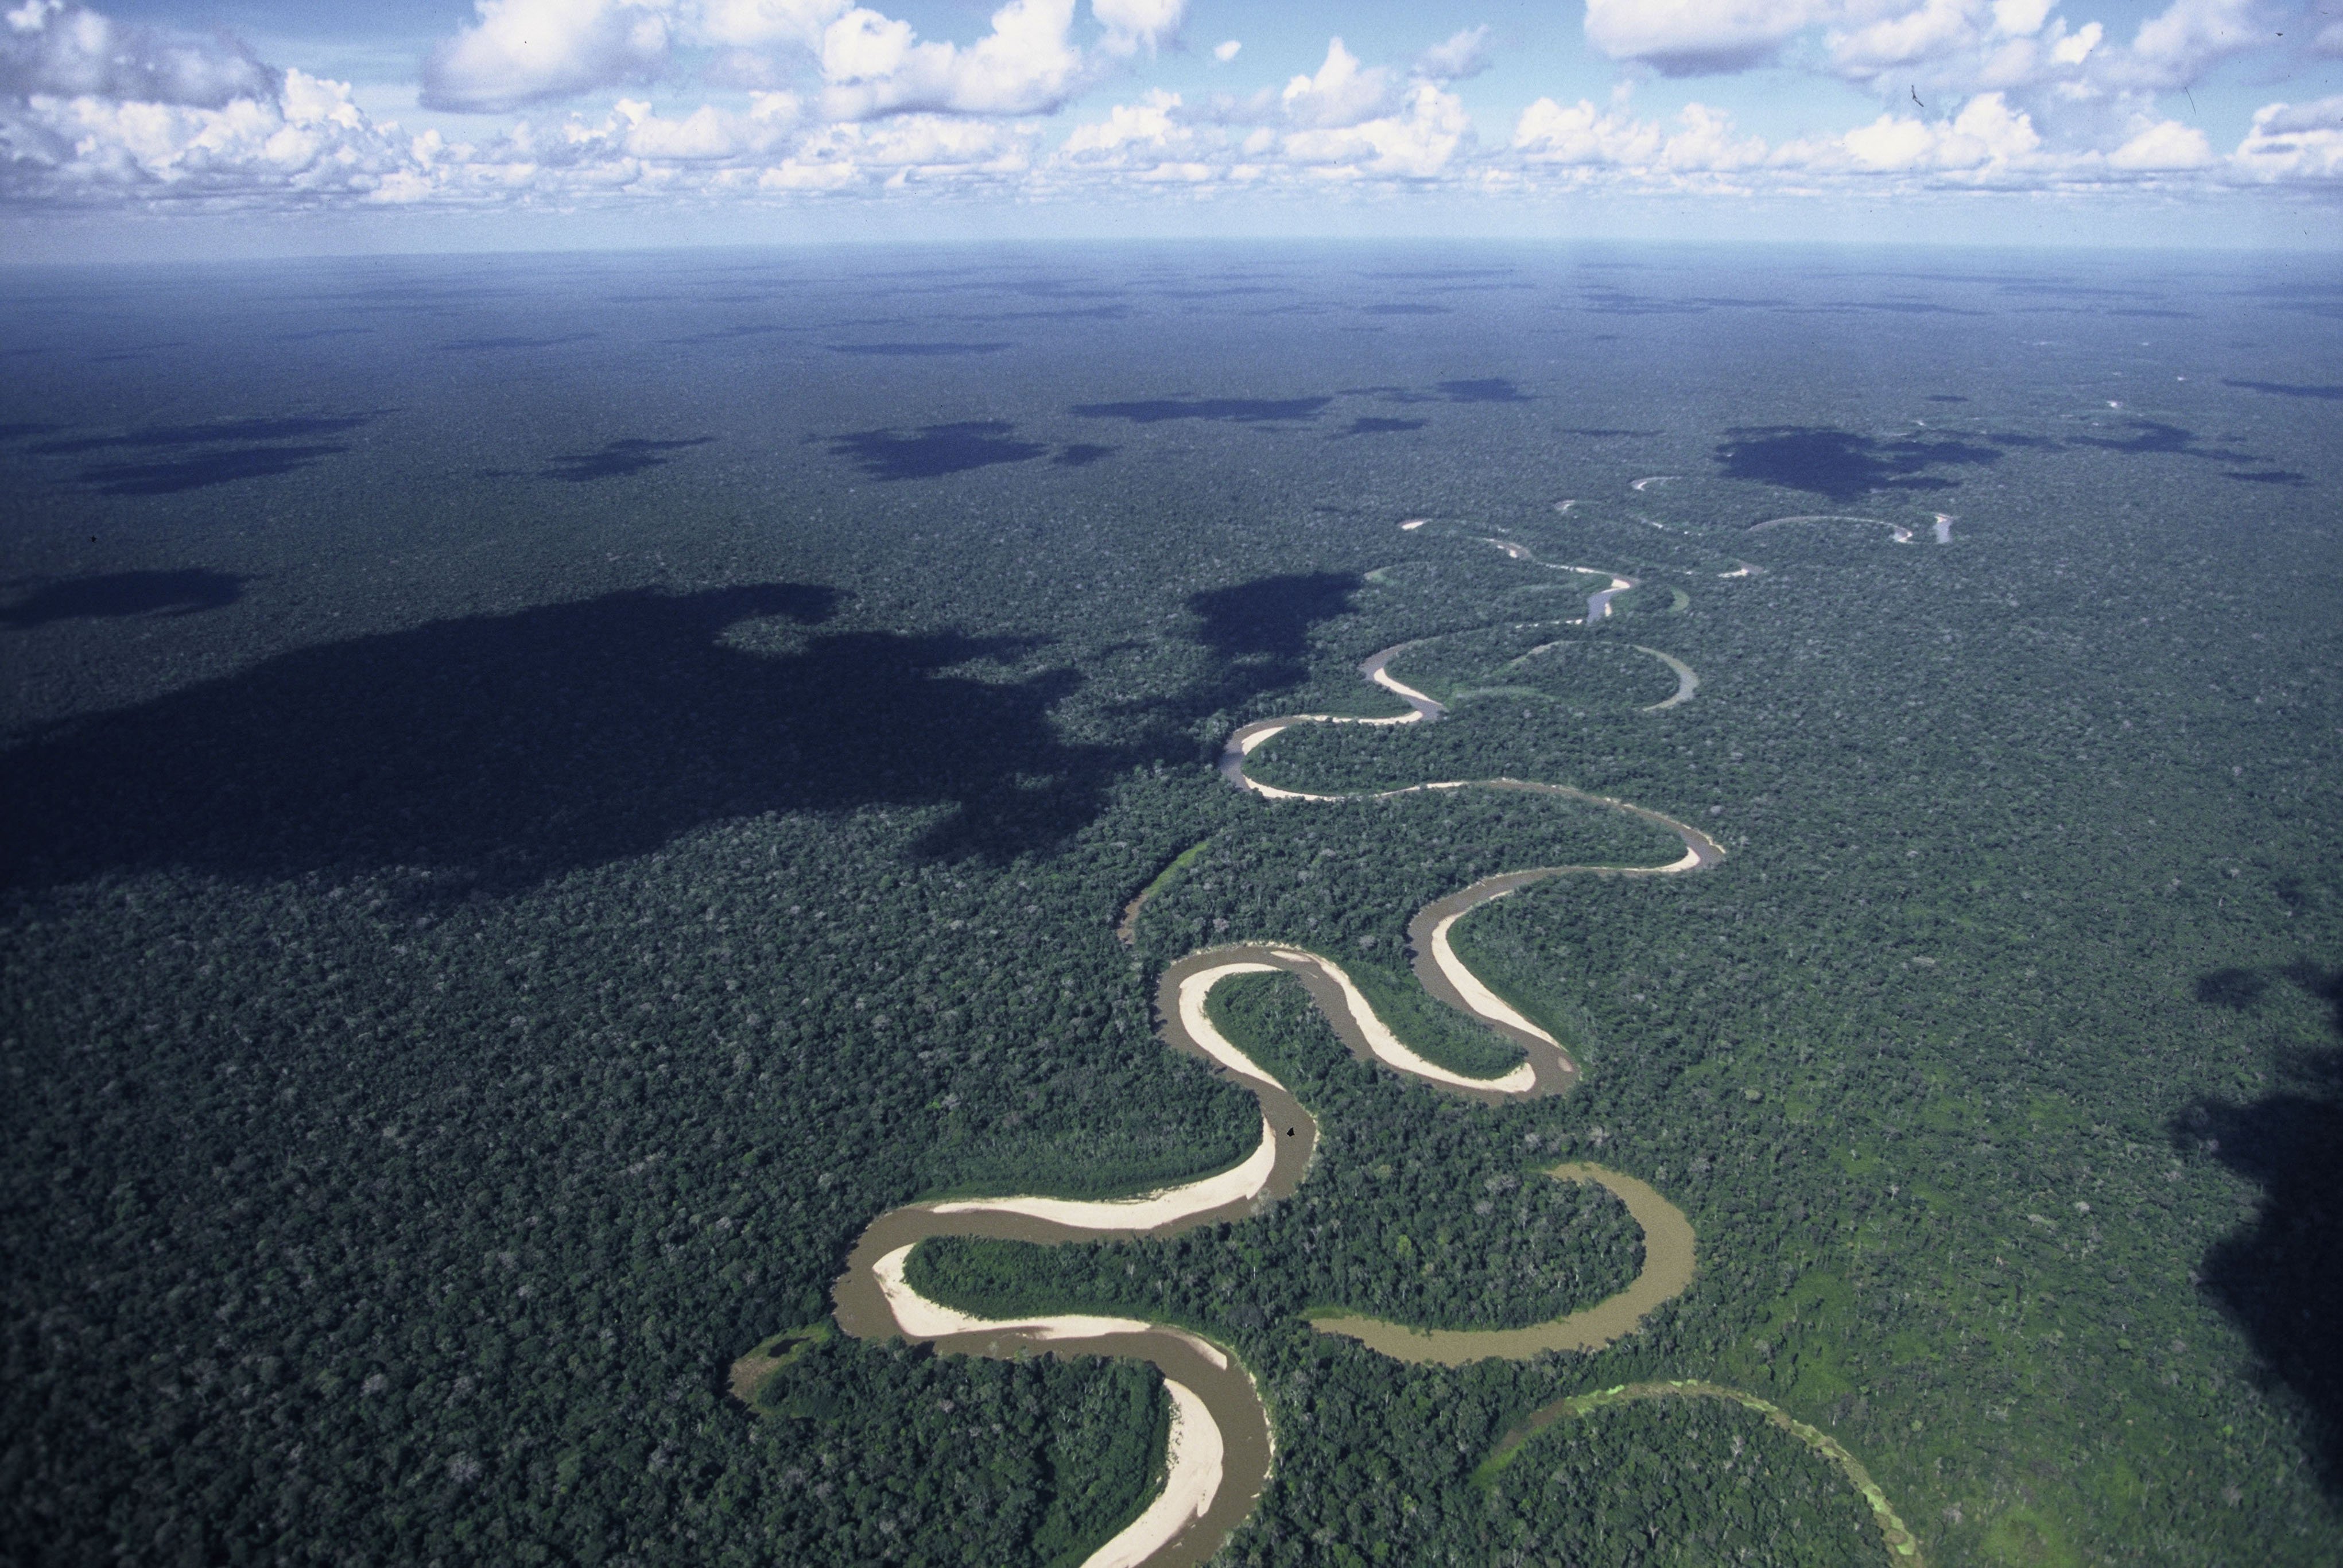 Полноводная река планеты. Амазонка Укаяли Мараньон. Амазонка река Укаяли. Укаяли Исток. Бразилия Амазонская низменность.